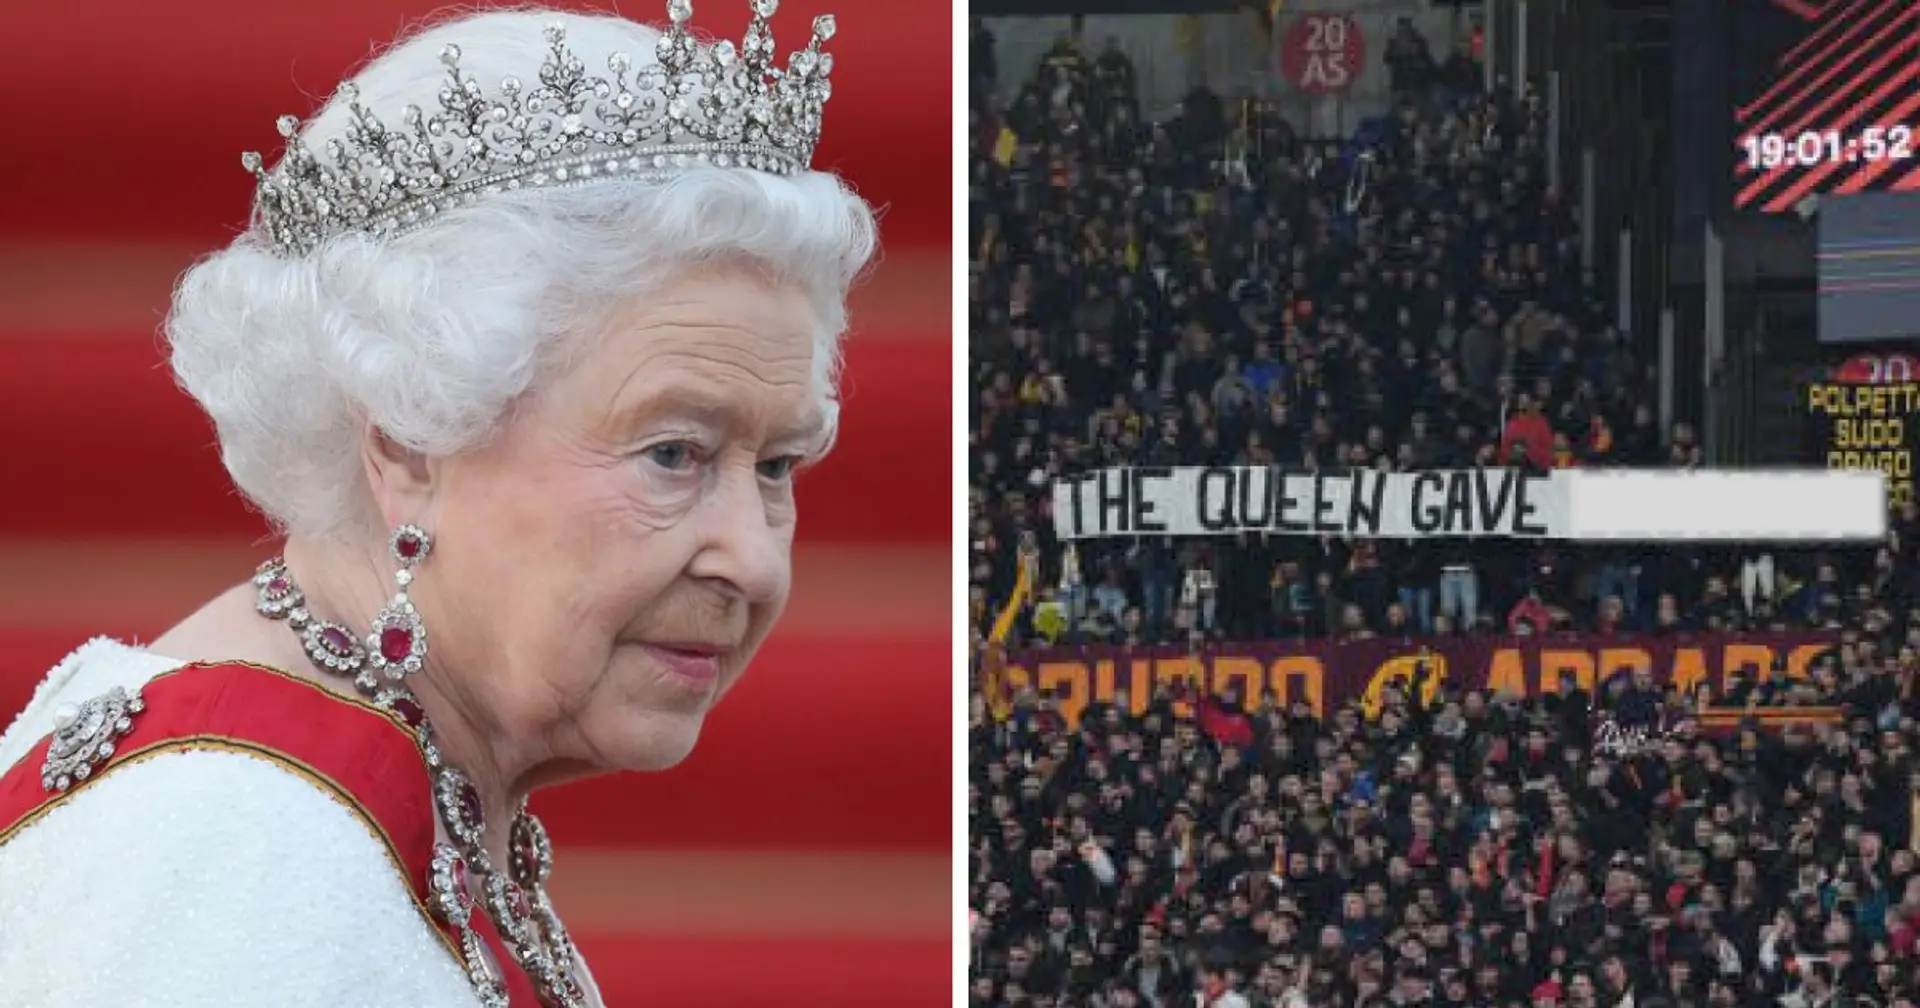 Roma-Ultras halten während des Brighton-Spiels ein abscheuliches Banner mit der Königin hoch